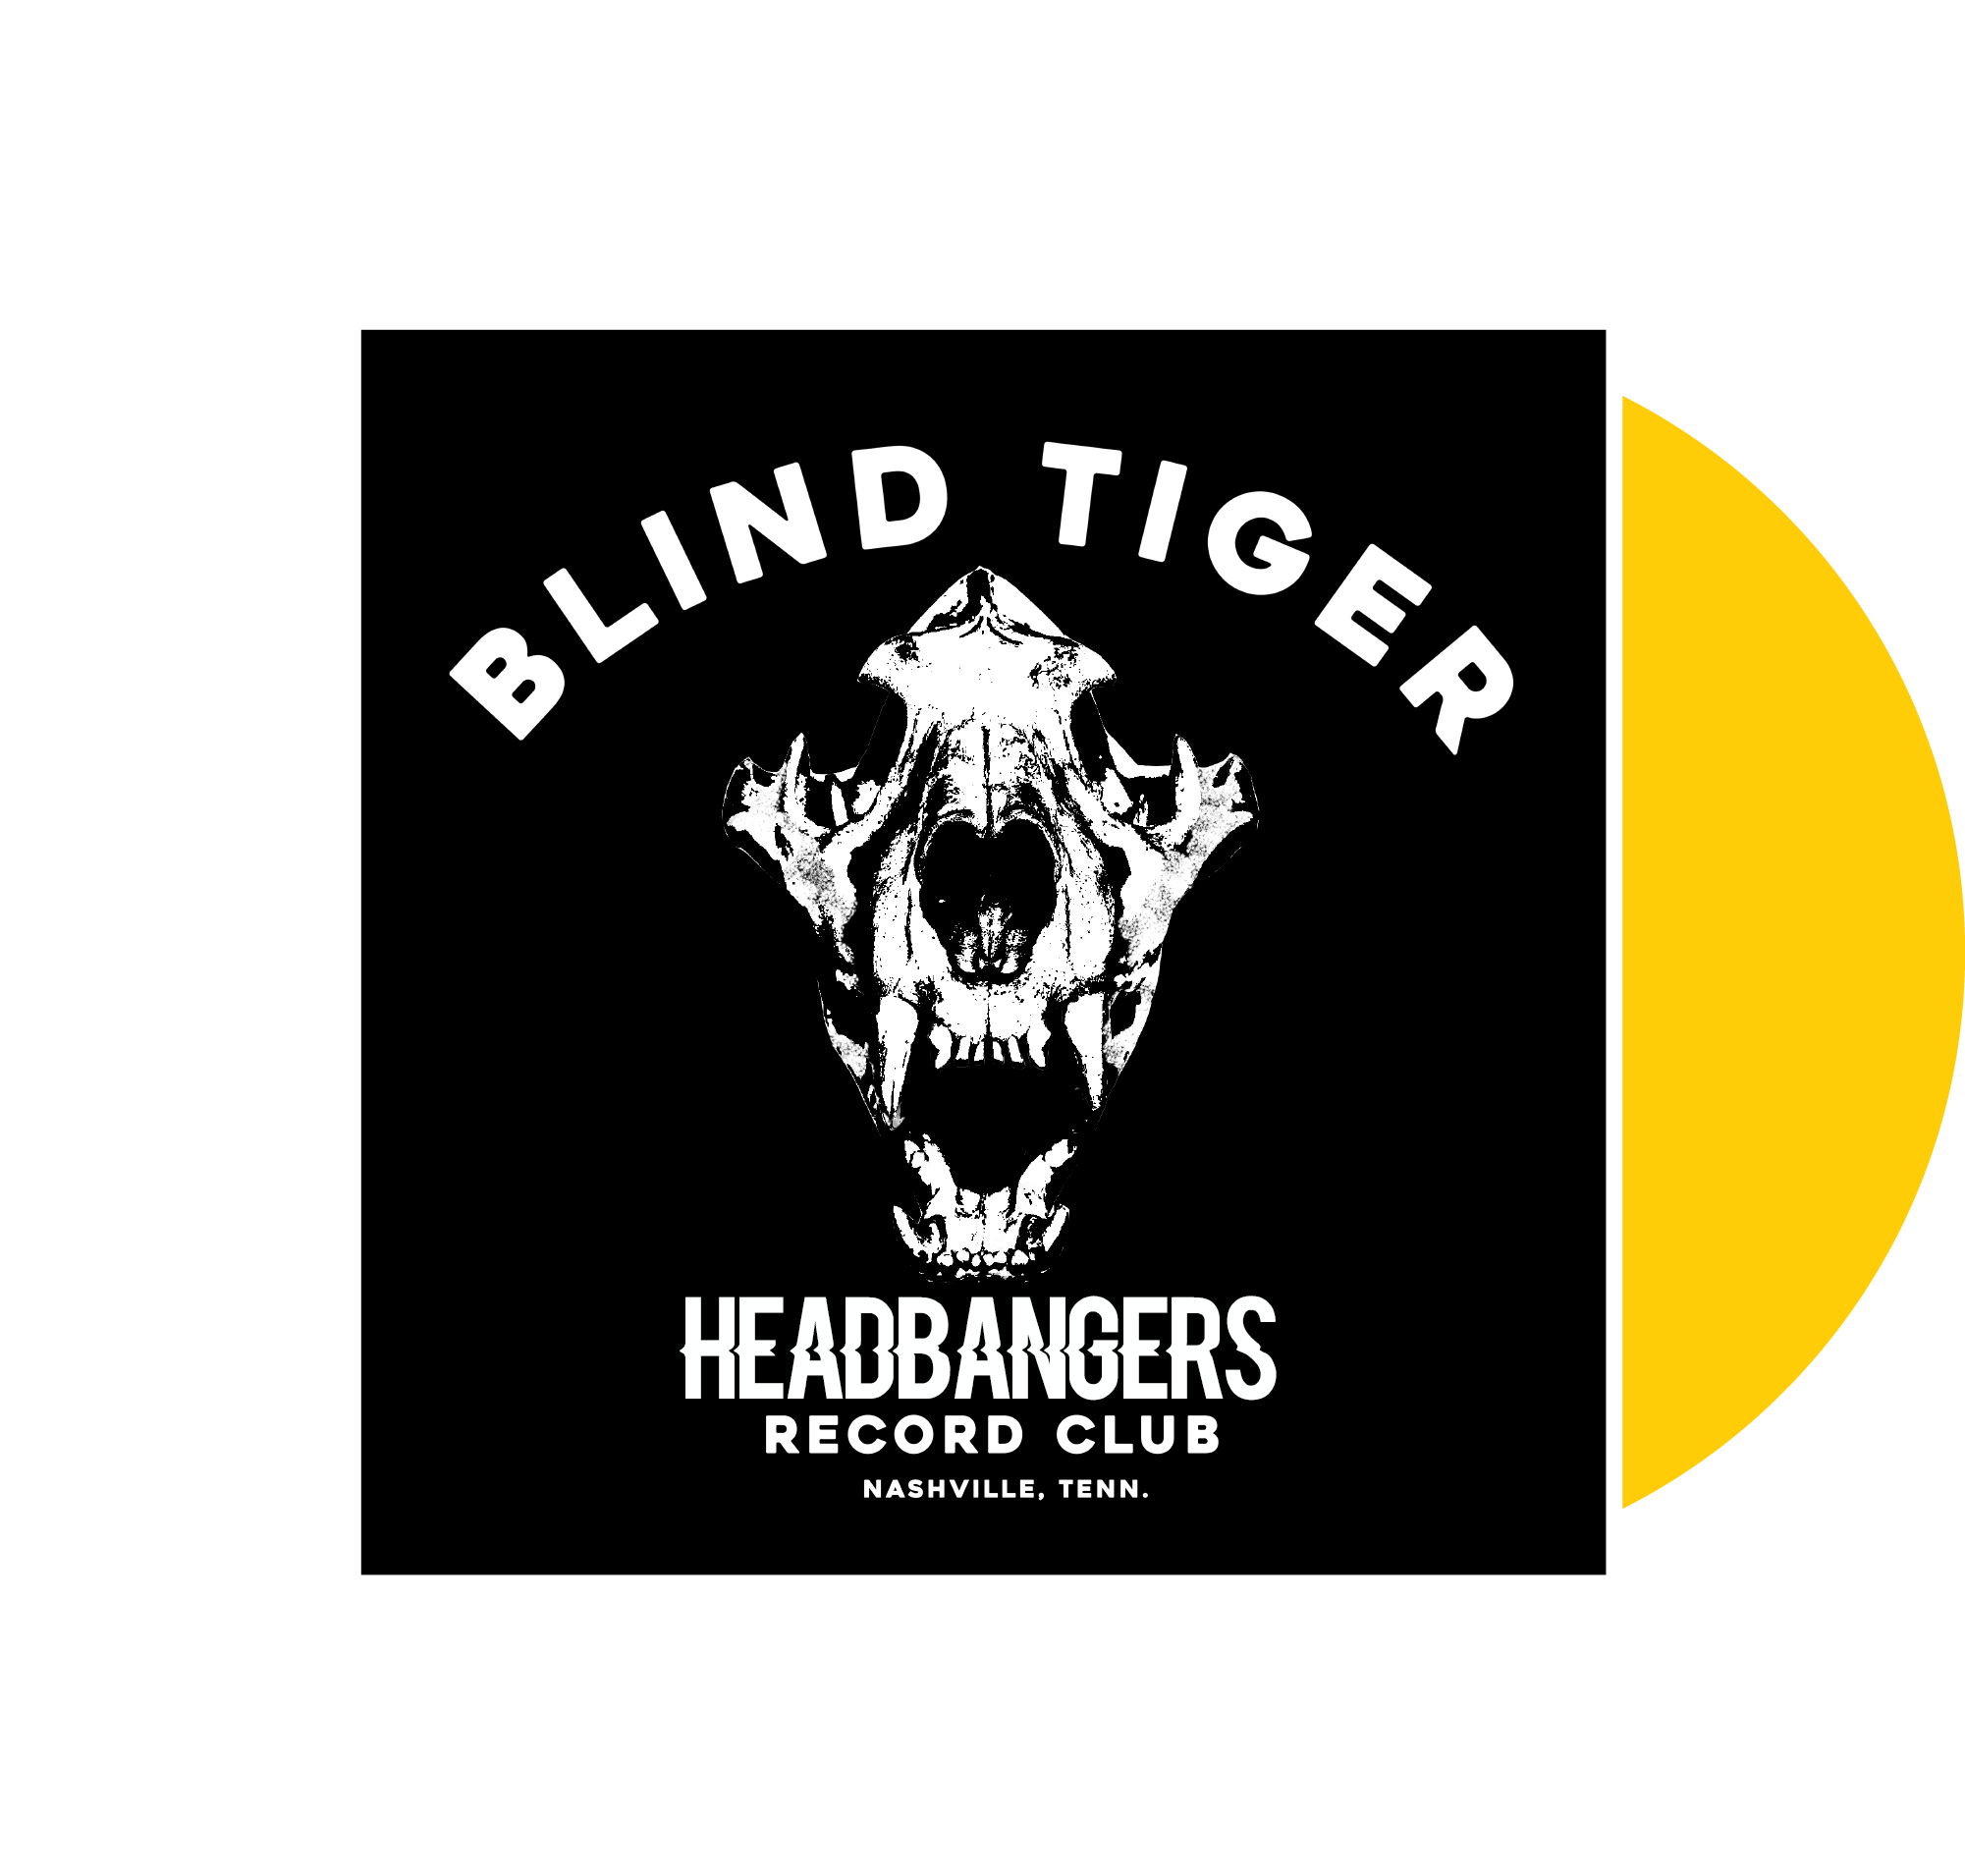 B.T.R.C. Headbangers - Blind Tiger Record Club